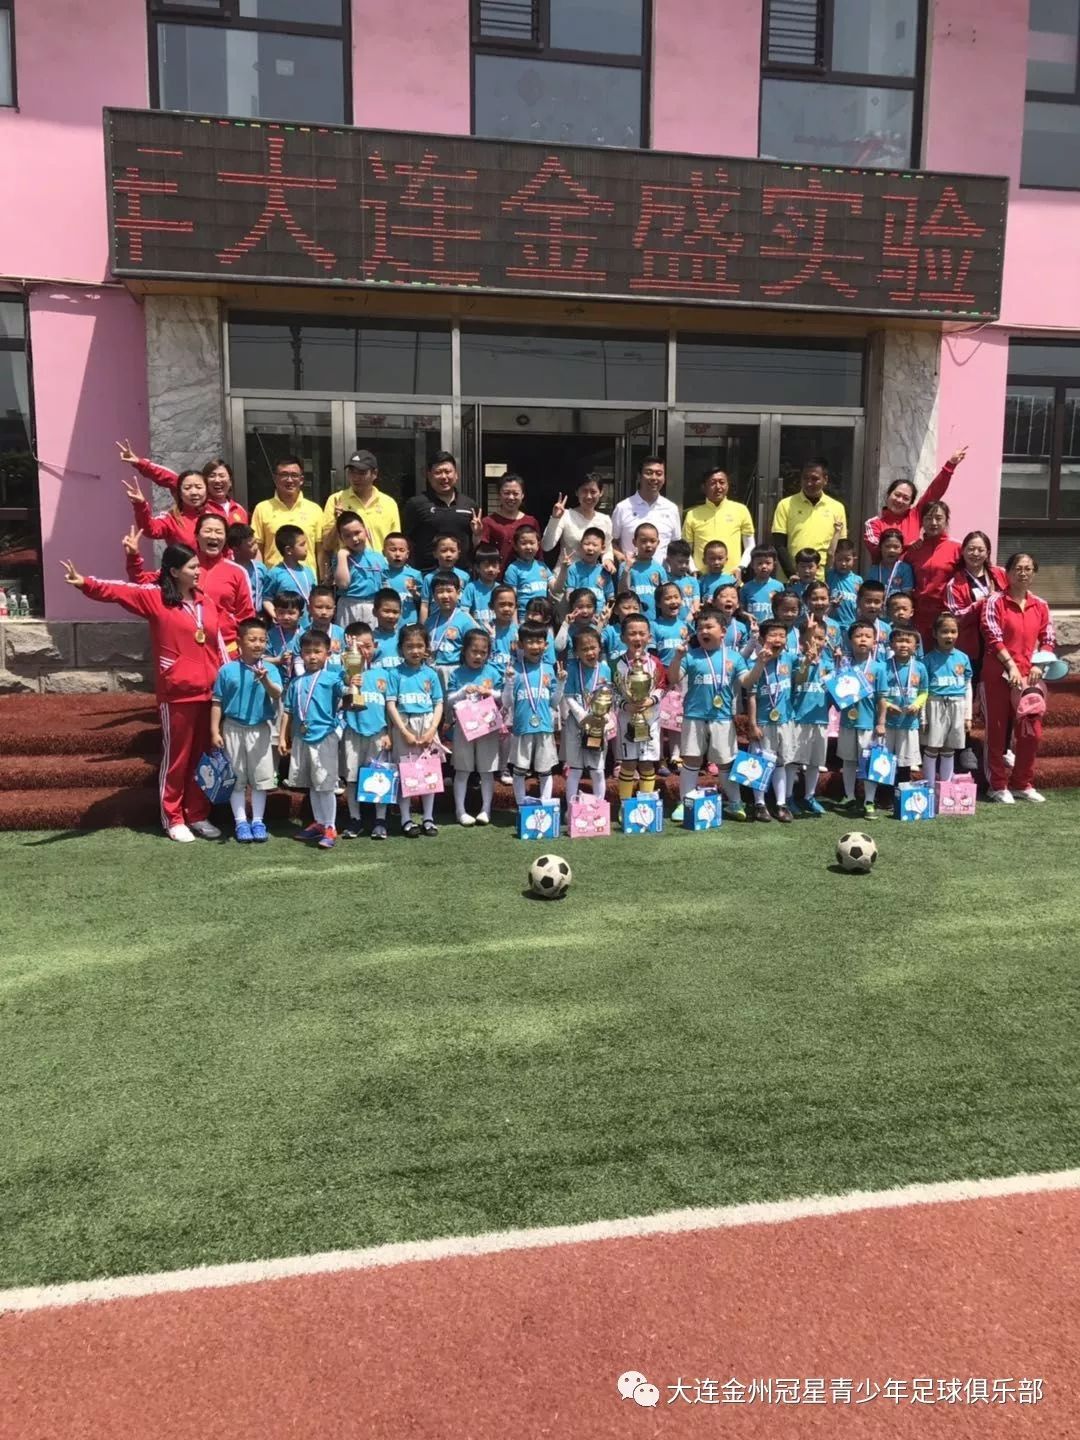 与冠星青少年足球俱乐部合作的金盛实验幼儿园,六合苑幼儿园参加了